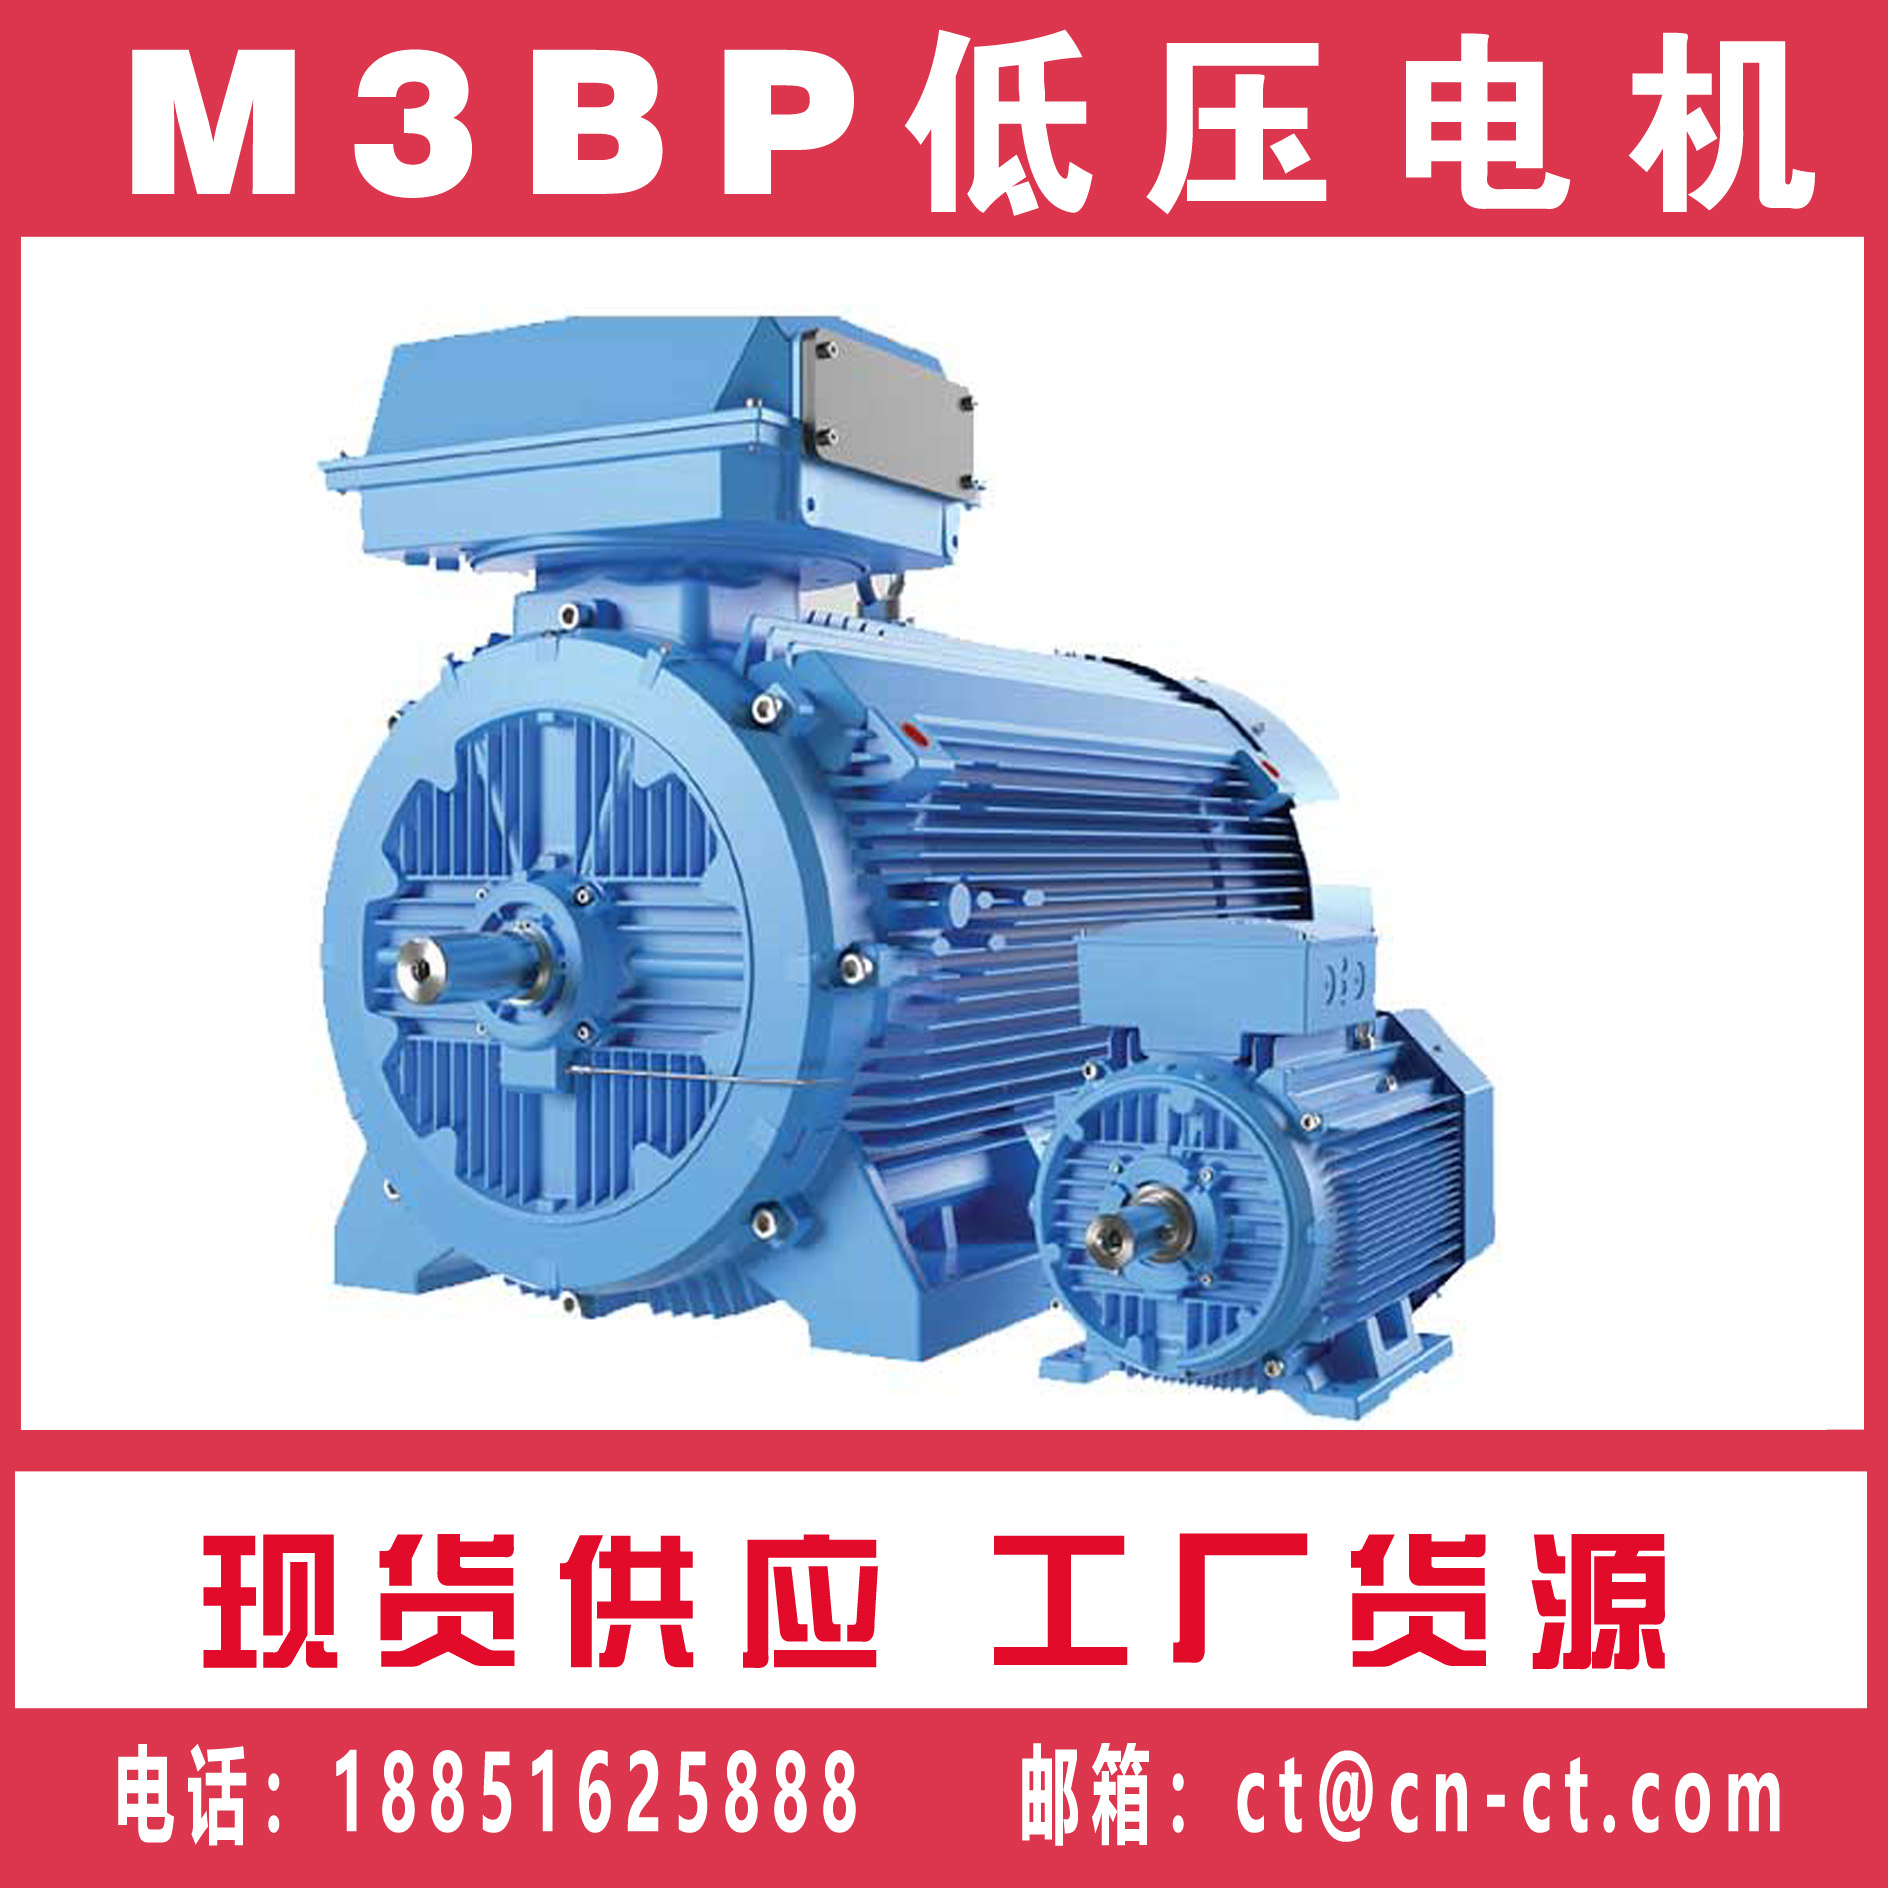 M3BP低压防爆ABB电机